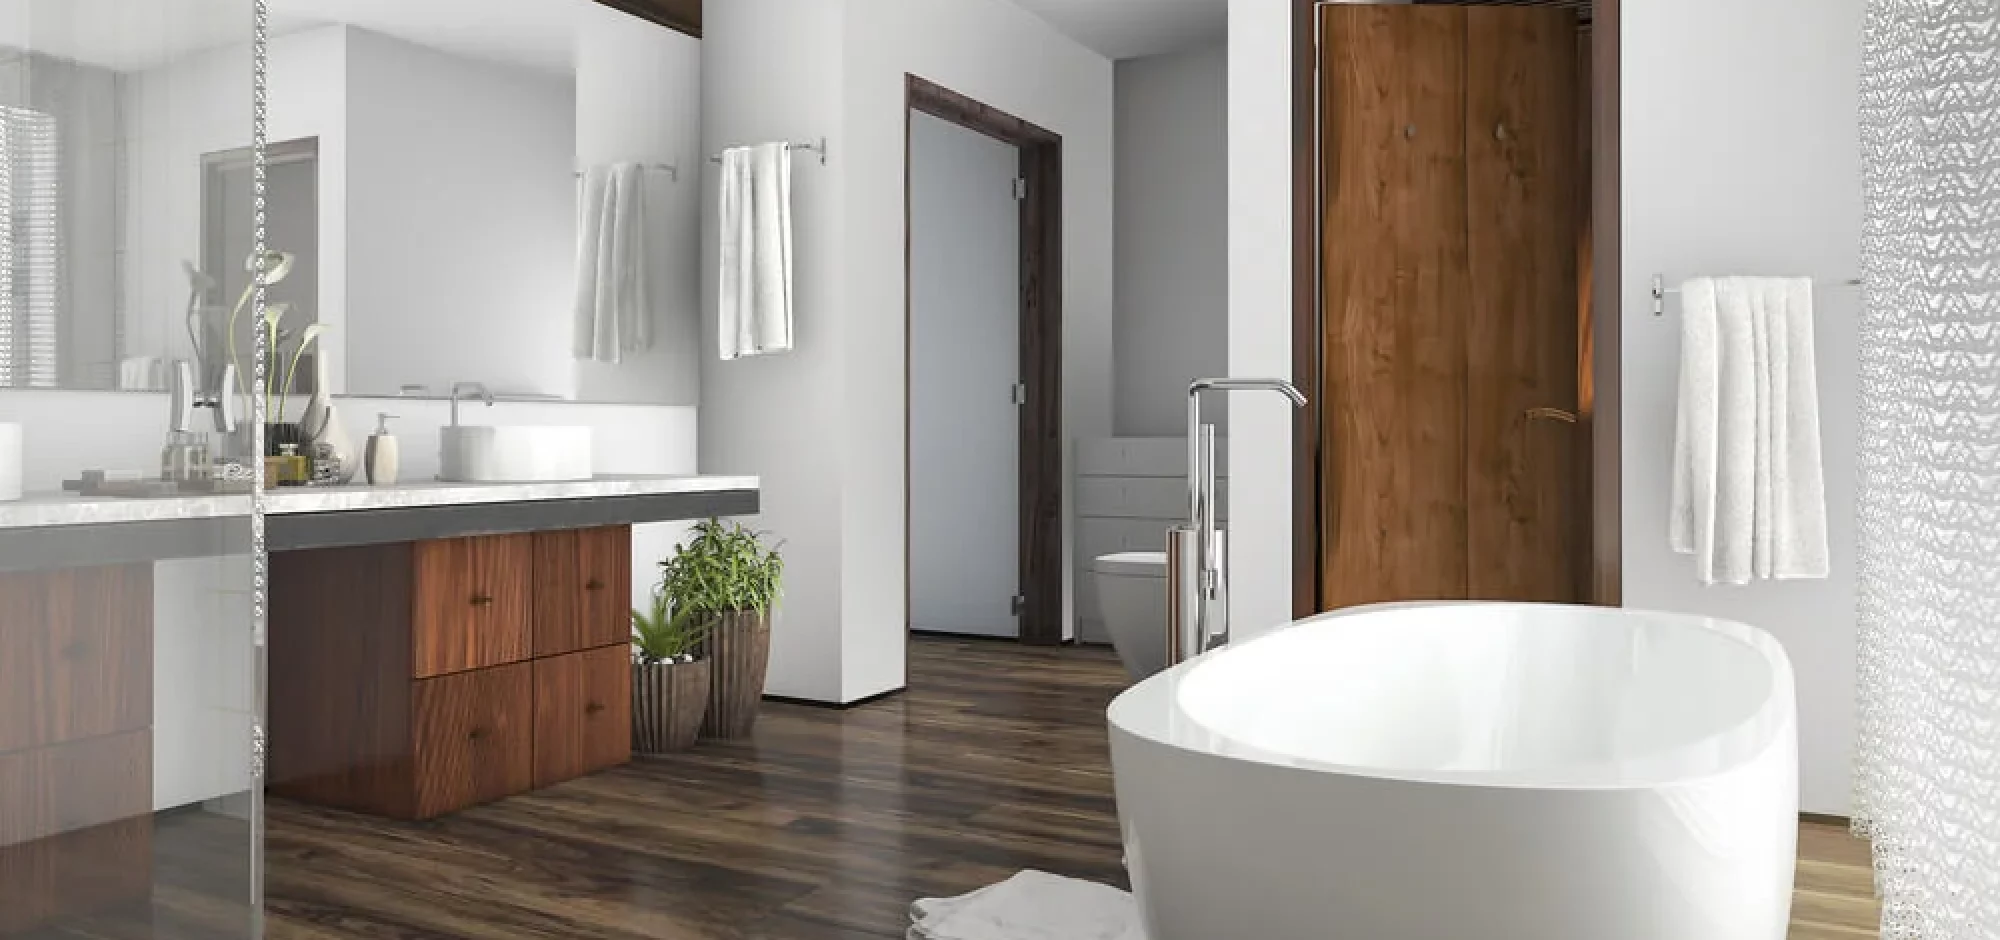 White Bathroom Wood Floors 1